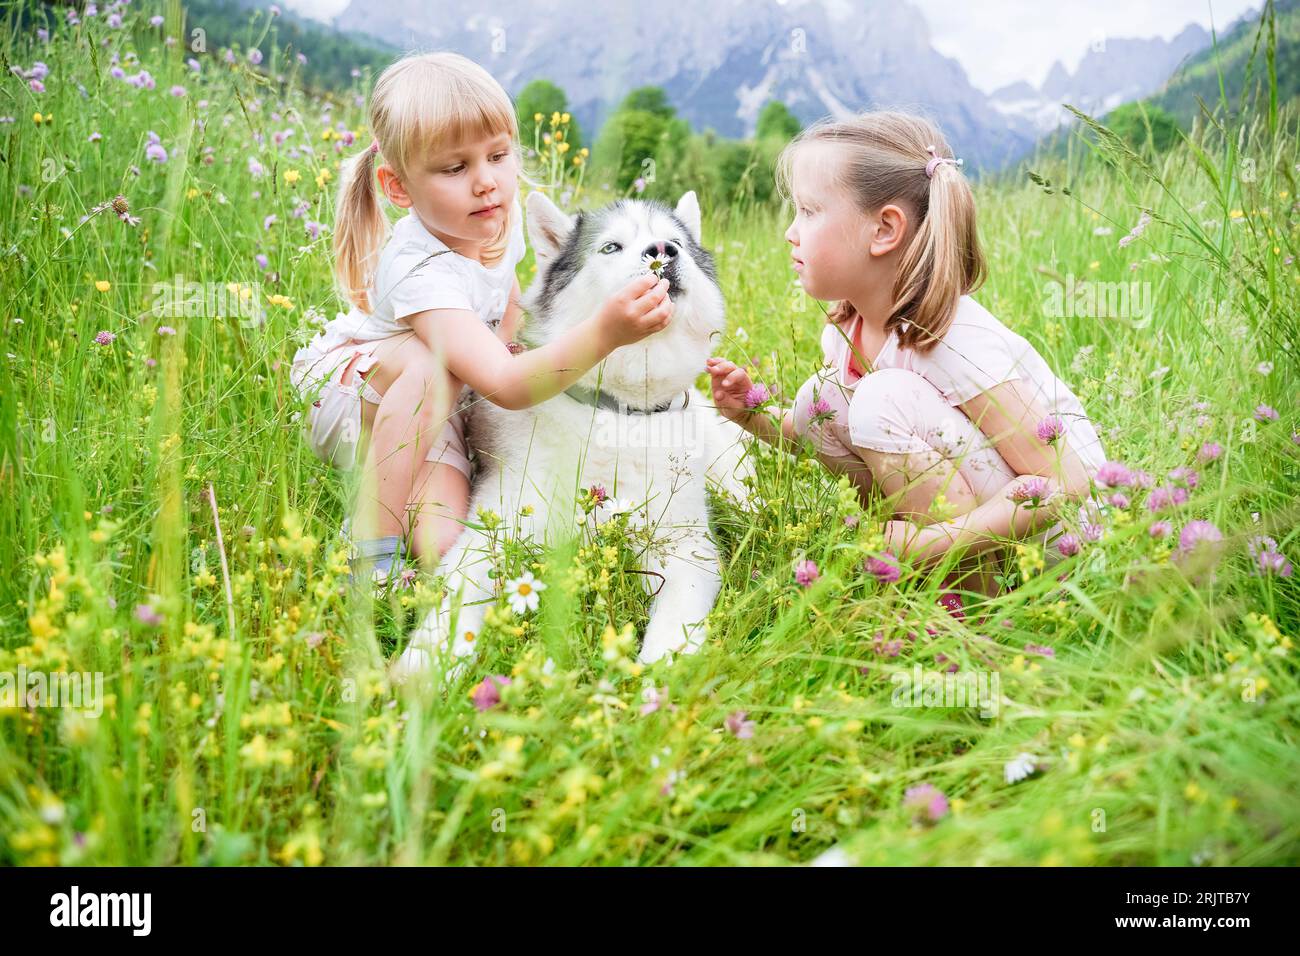 Les filles passent du temps libre avec un chien assis sur l'herbe Banque D'Images